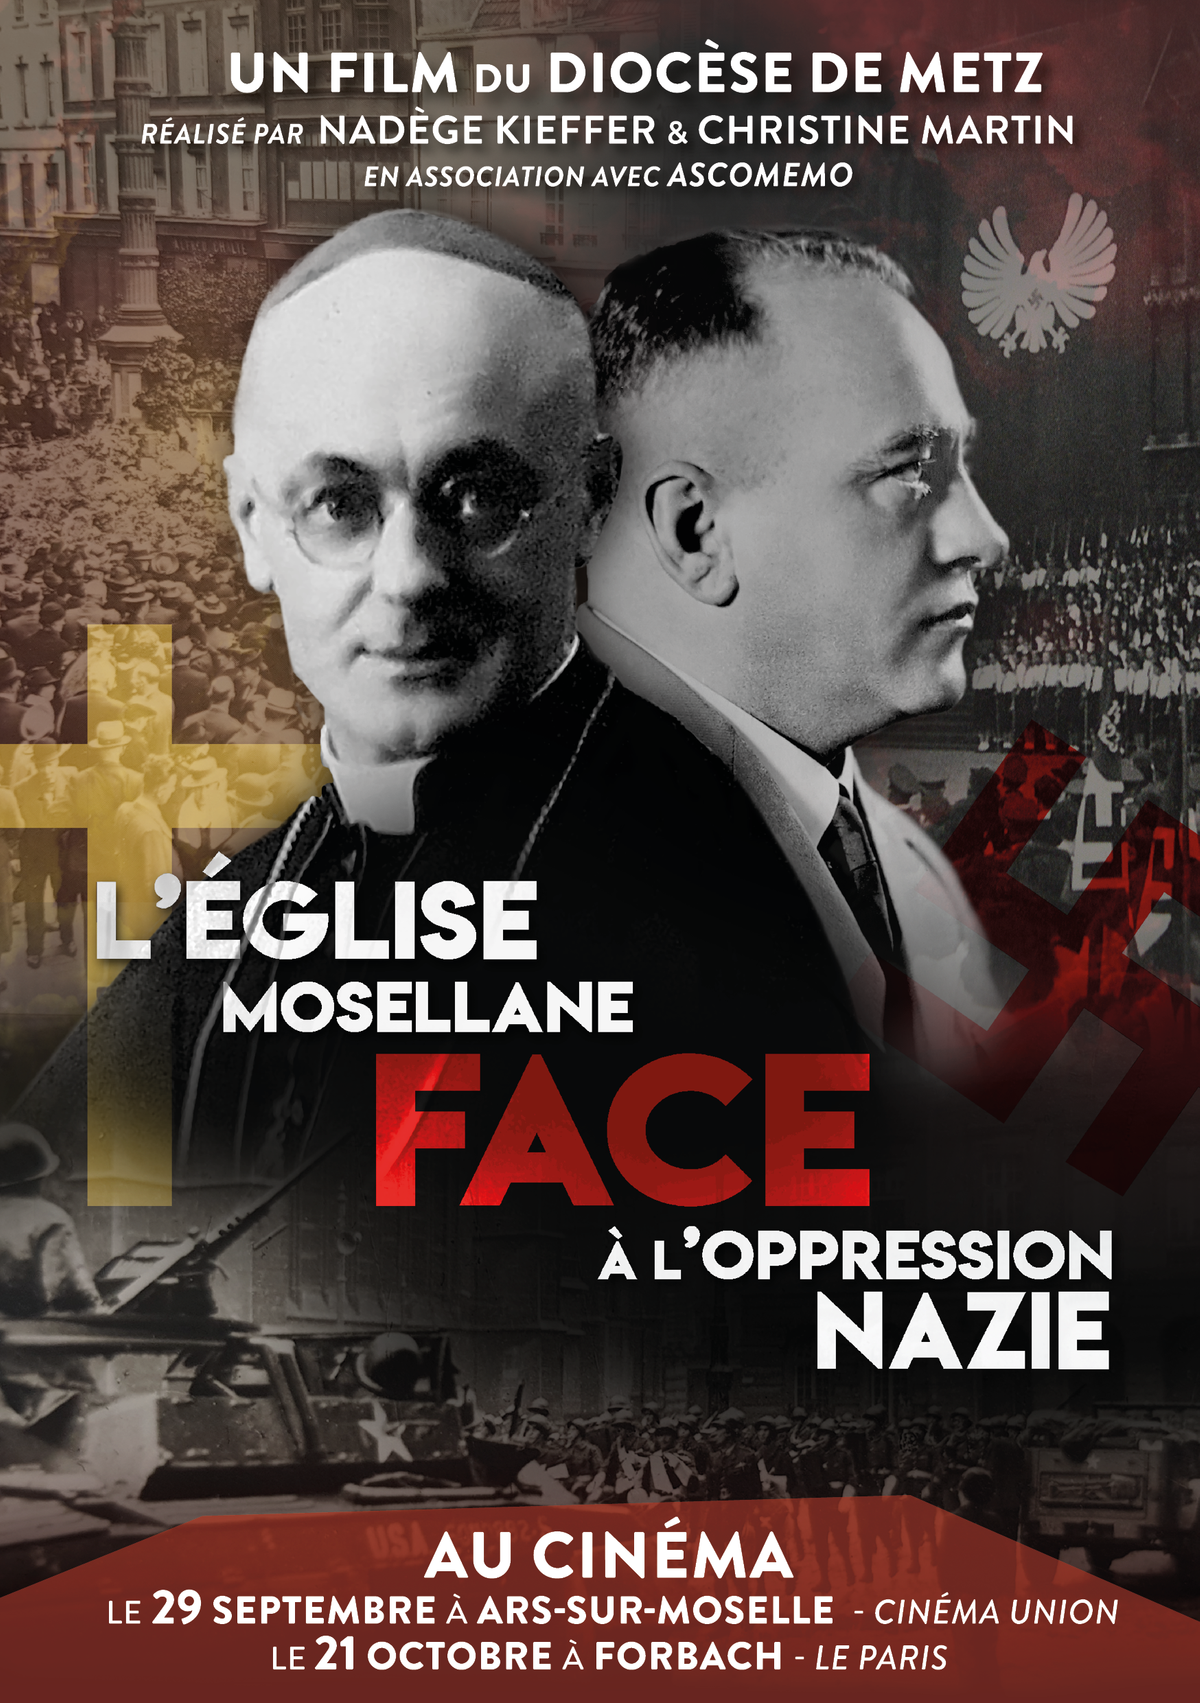 L’Église mosellane face à l’oppression nazie – Le film-documentaire projeté le 29 septembre à Ars-sur-Moselle (57) et à Forbach (57) le 21 octobre 2019